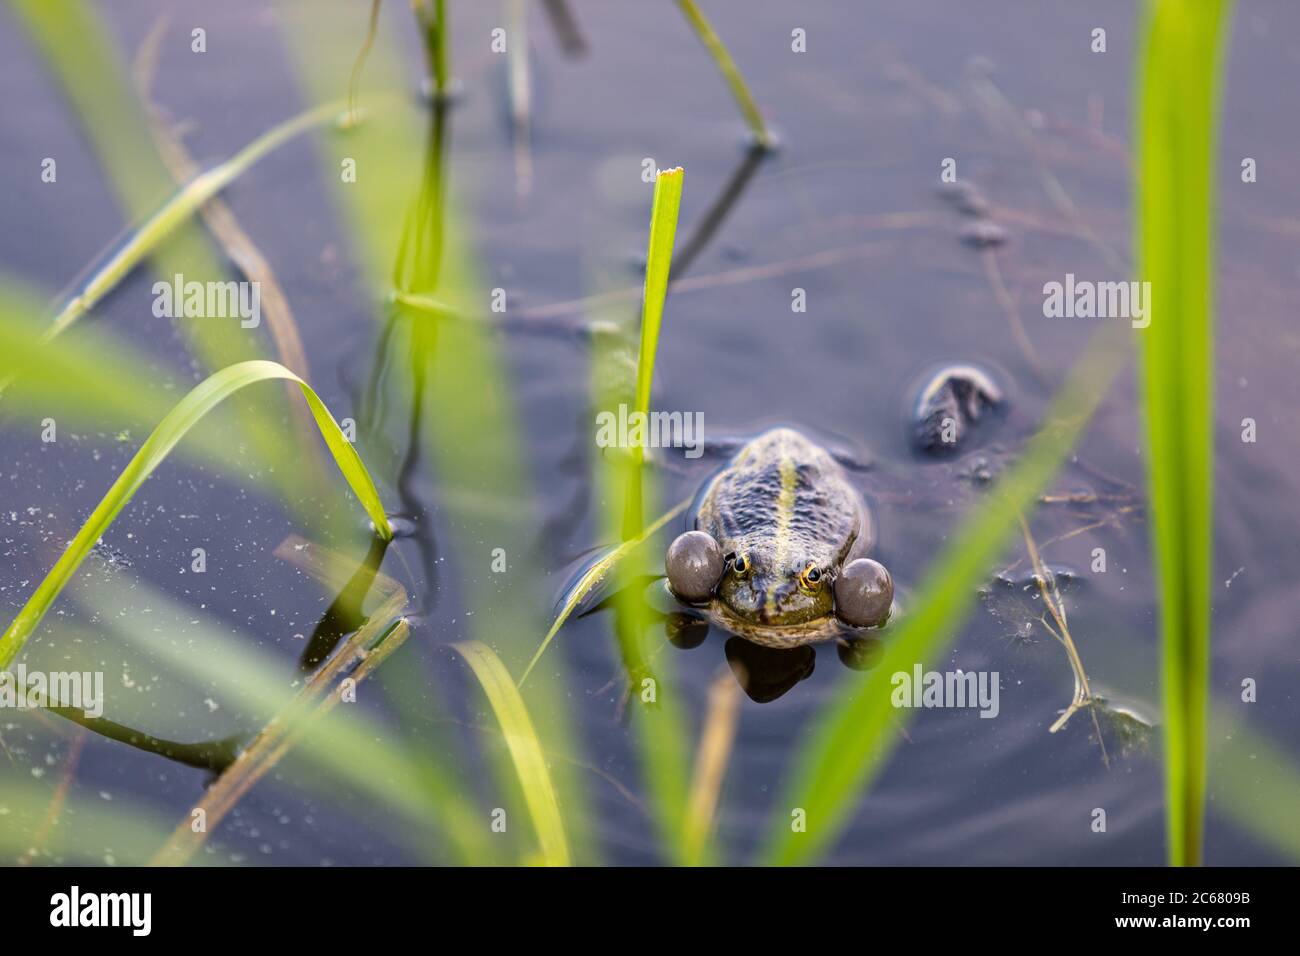 Amphibia Stockfotos und -bilder Kaufen - Alamy